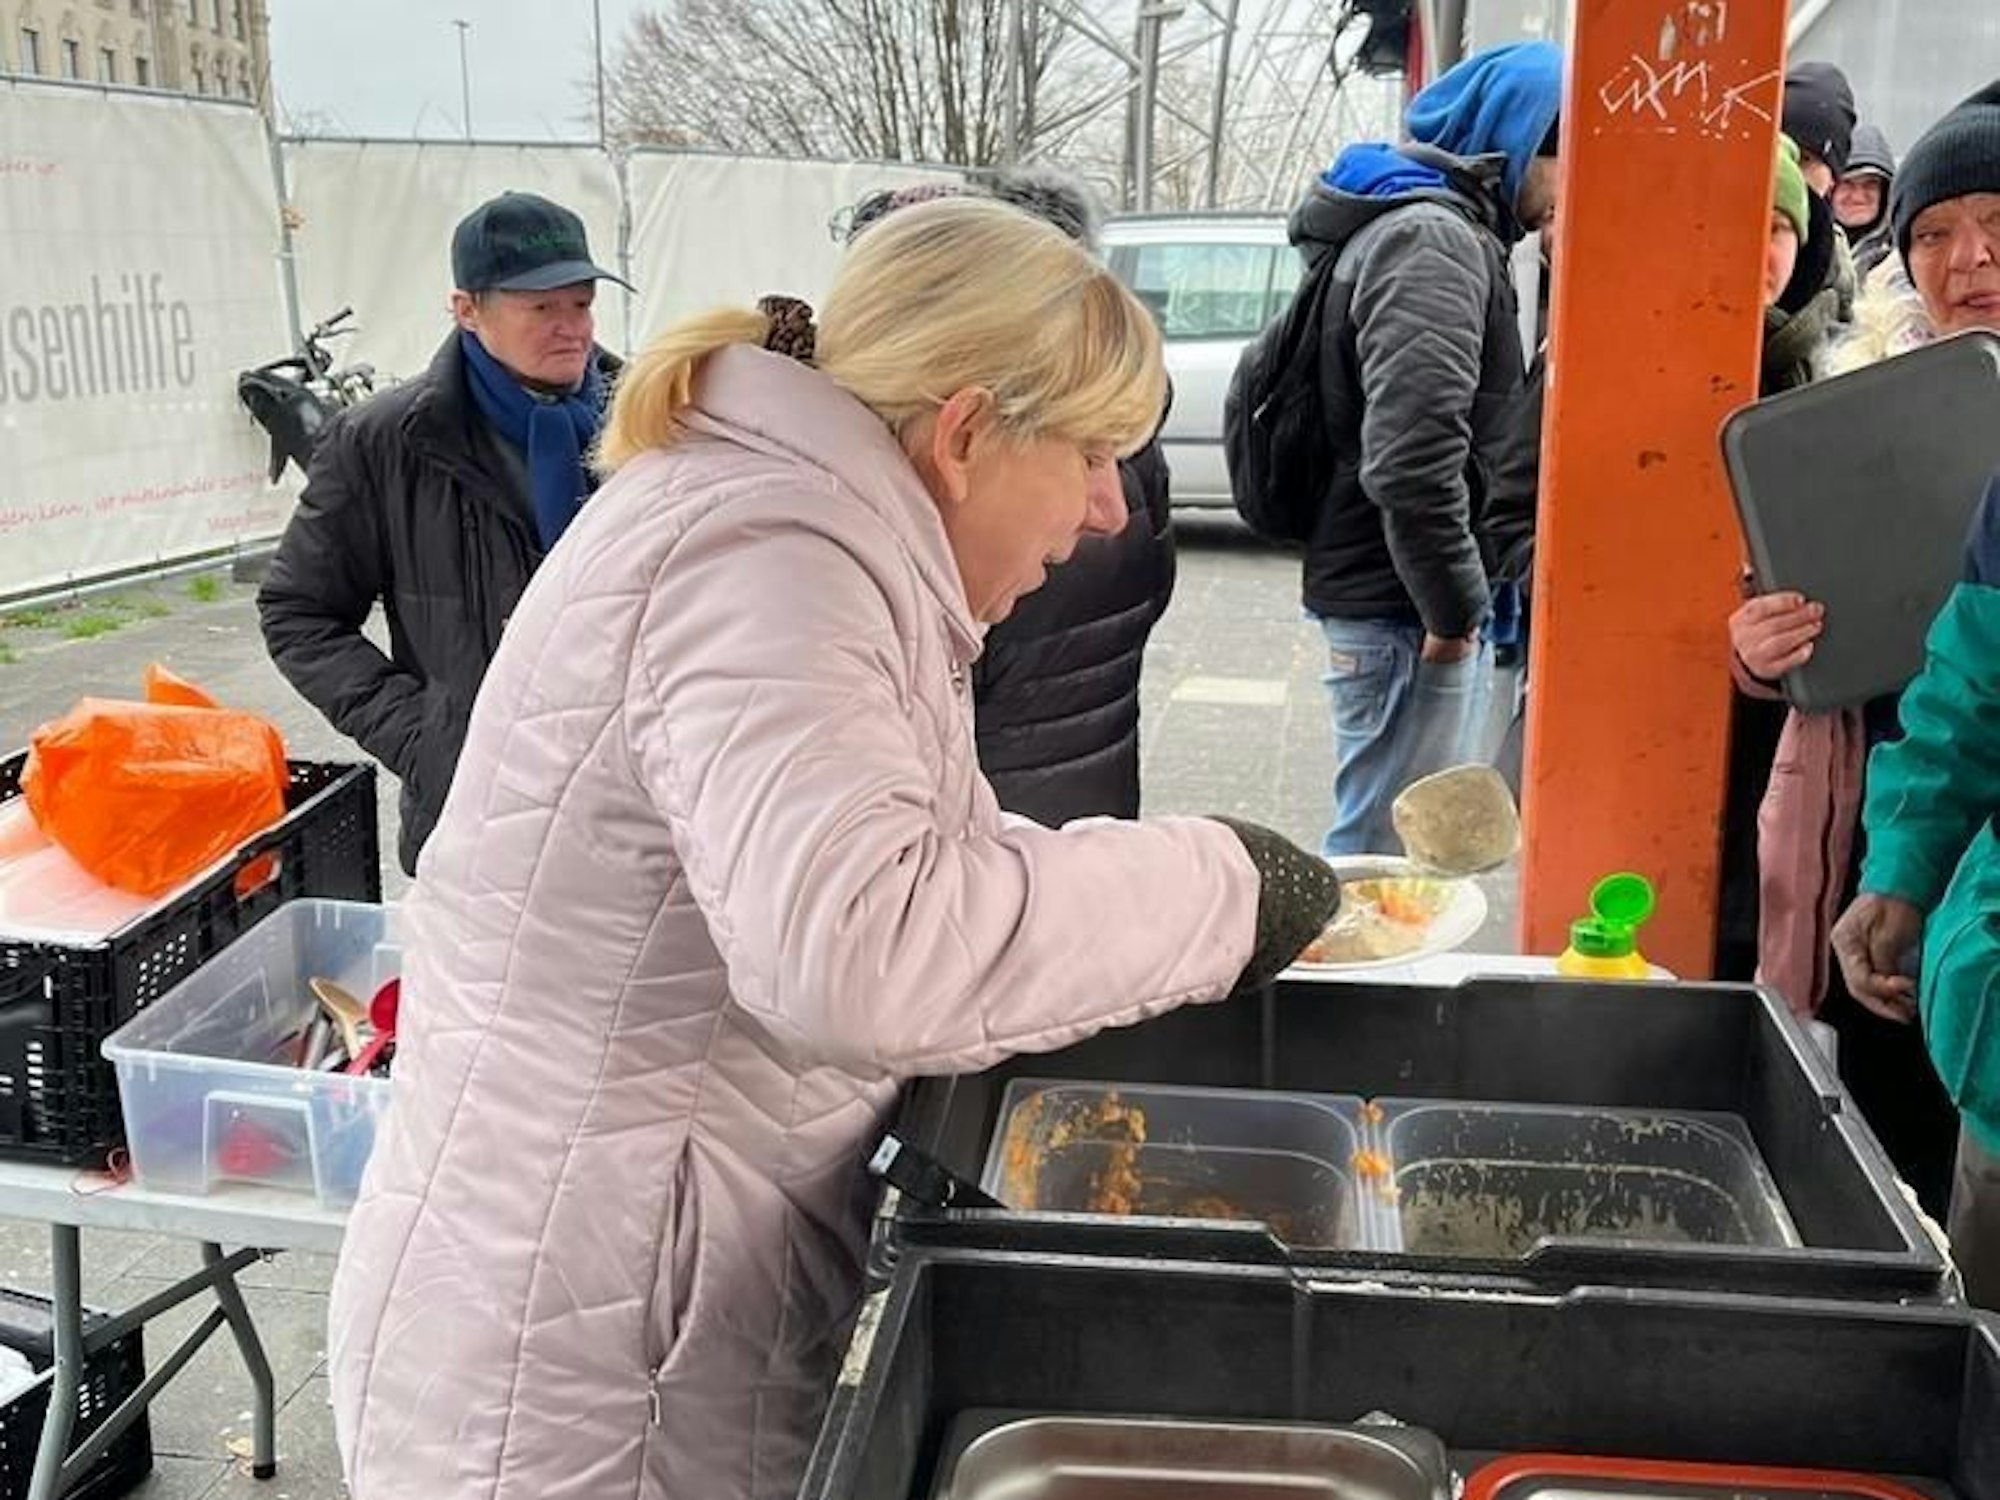 Warmes Essen in eisiger Kälte: Die Obdachlosenhilfe mit Herz engagiert sich seit fünf Jahren.